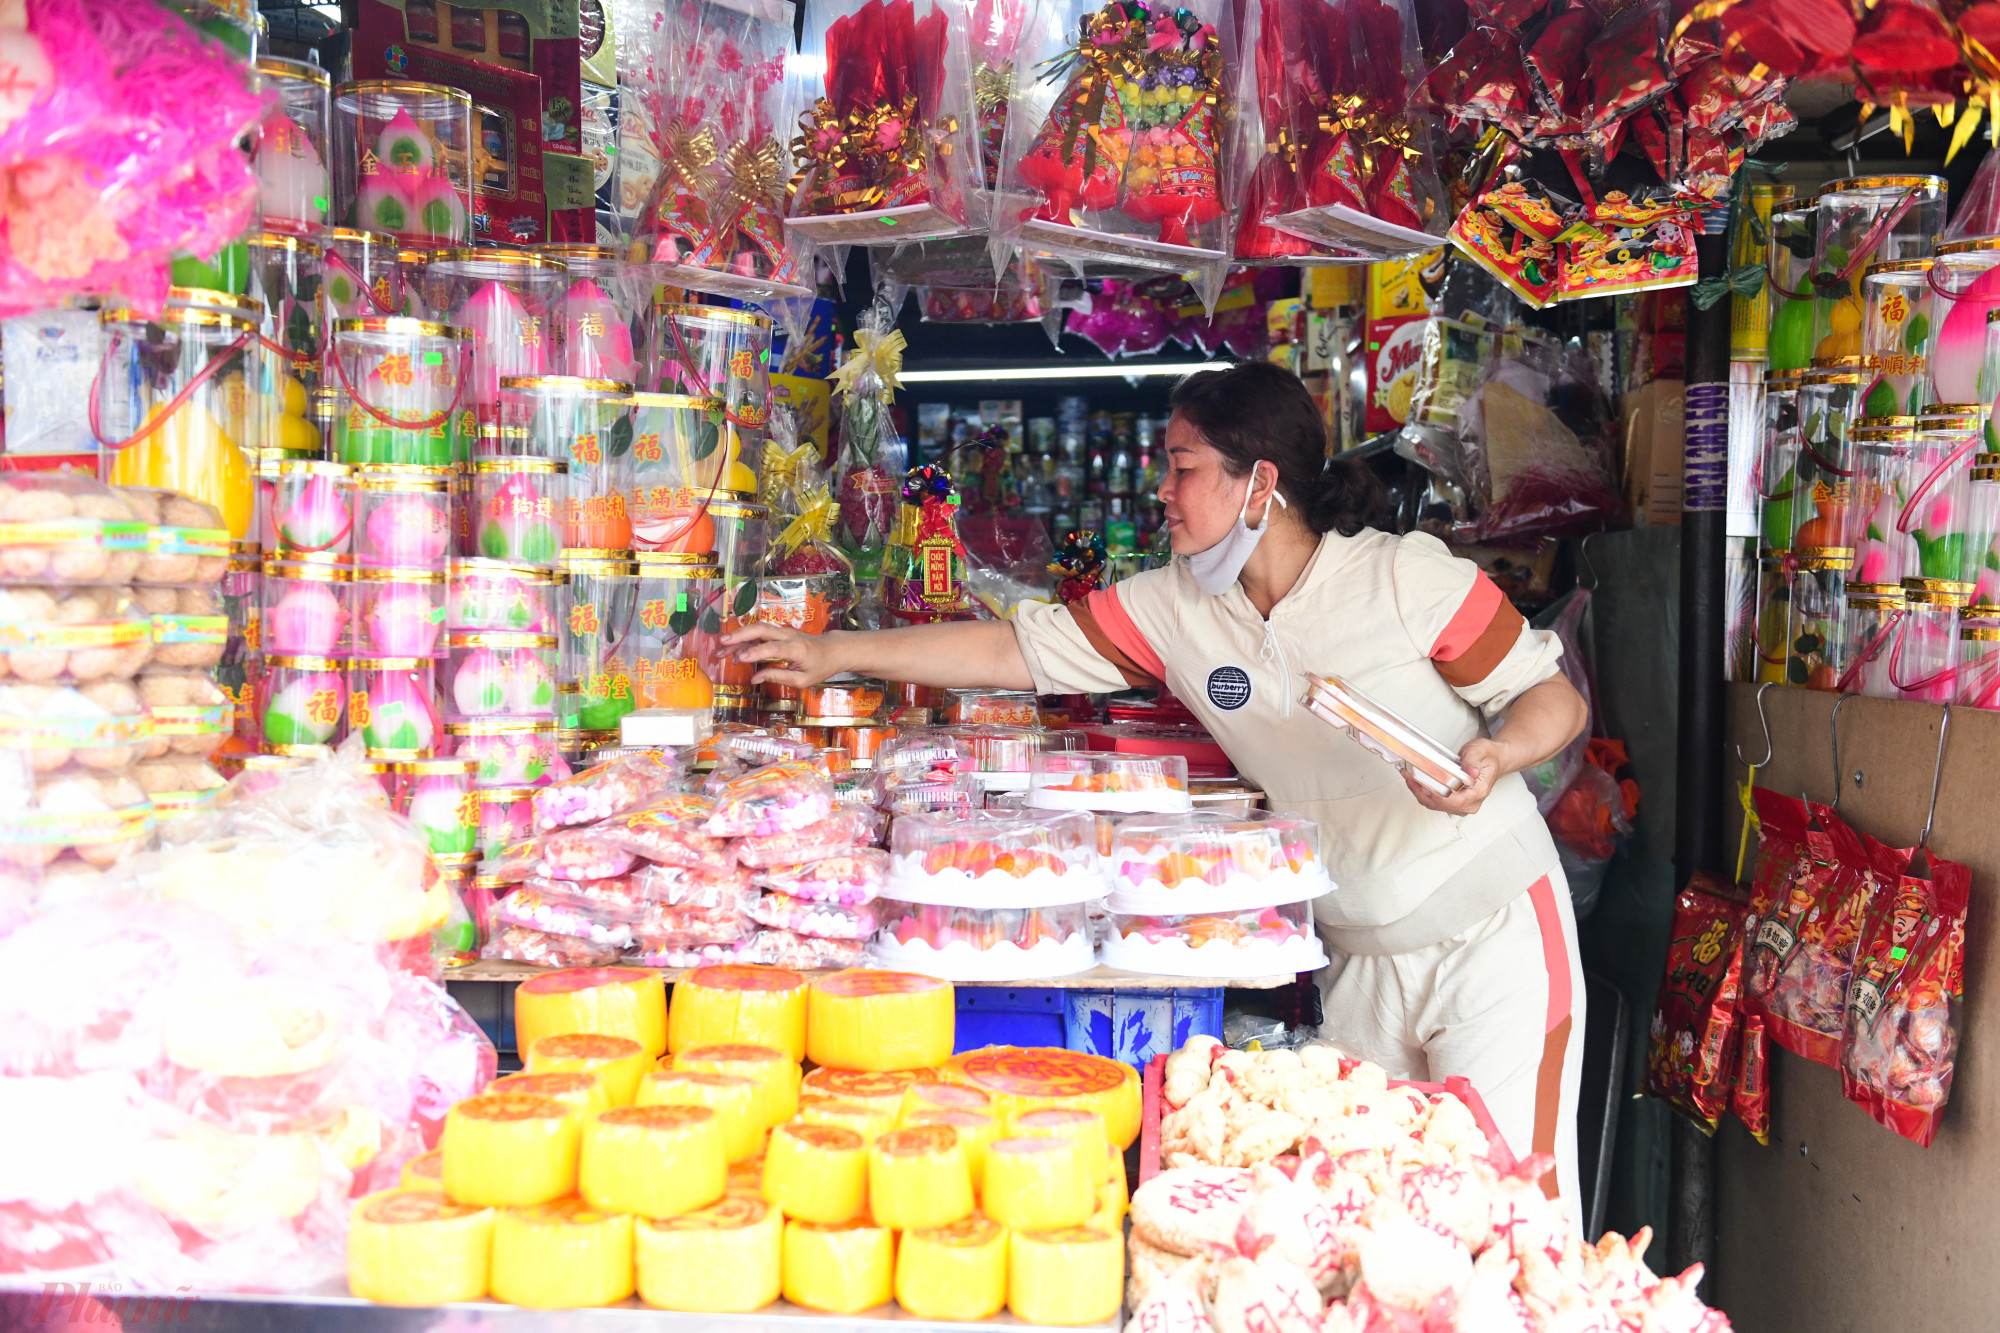 'Năm nay lượng khách đến mua các loại bánh cá chép giảm khá nhiều dù đã đến mùa cúng Táo quân', chị Thanh, chủ cửa hàng Hòa Ký ở khu chợ Thiếc cho biết.